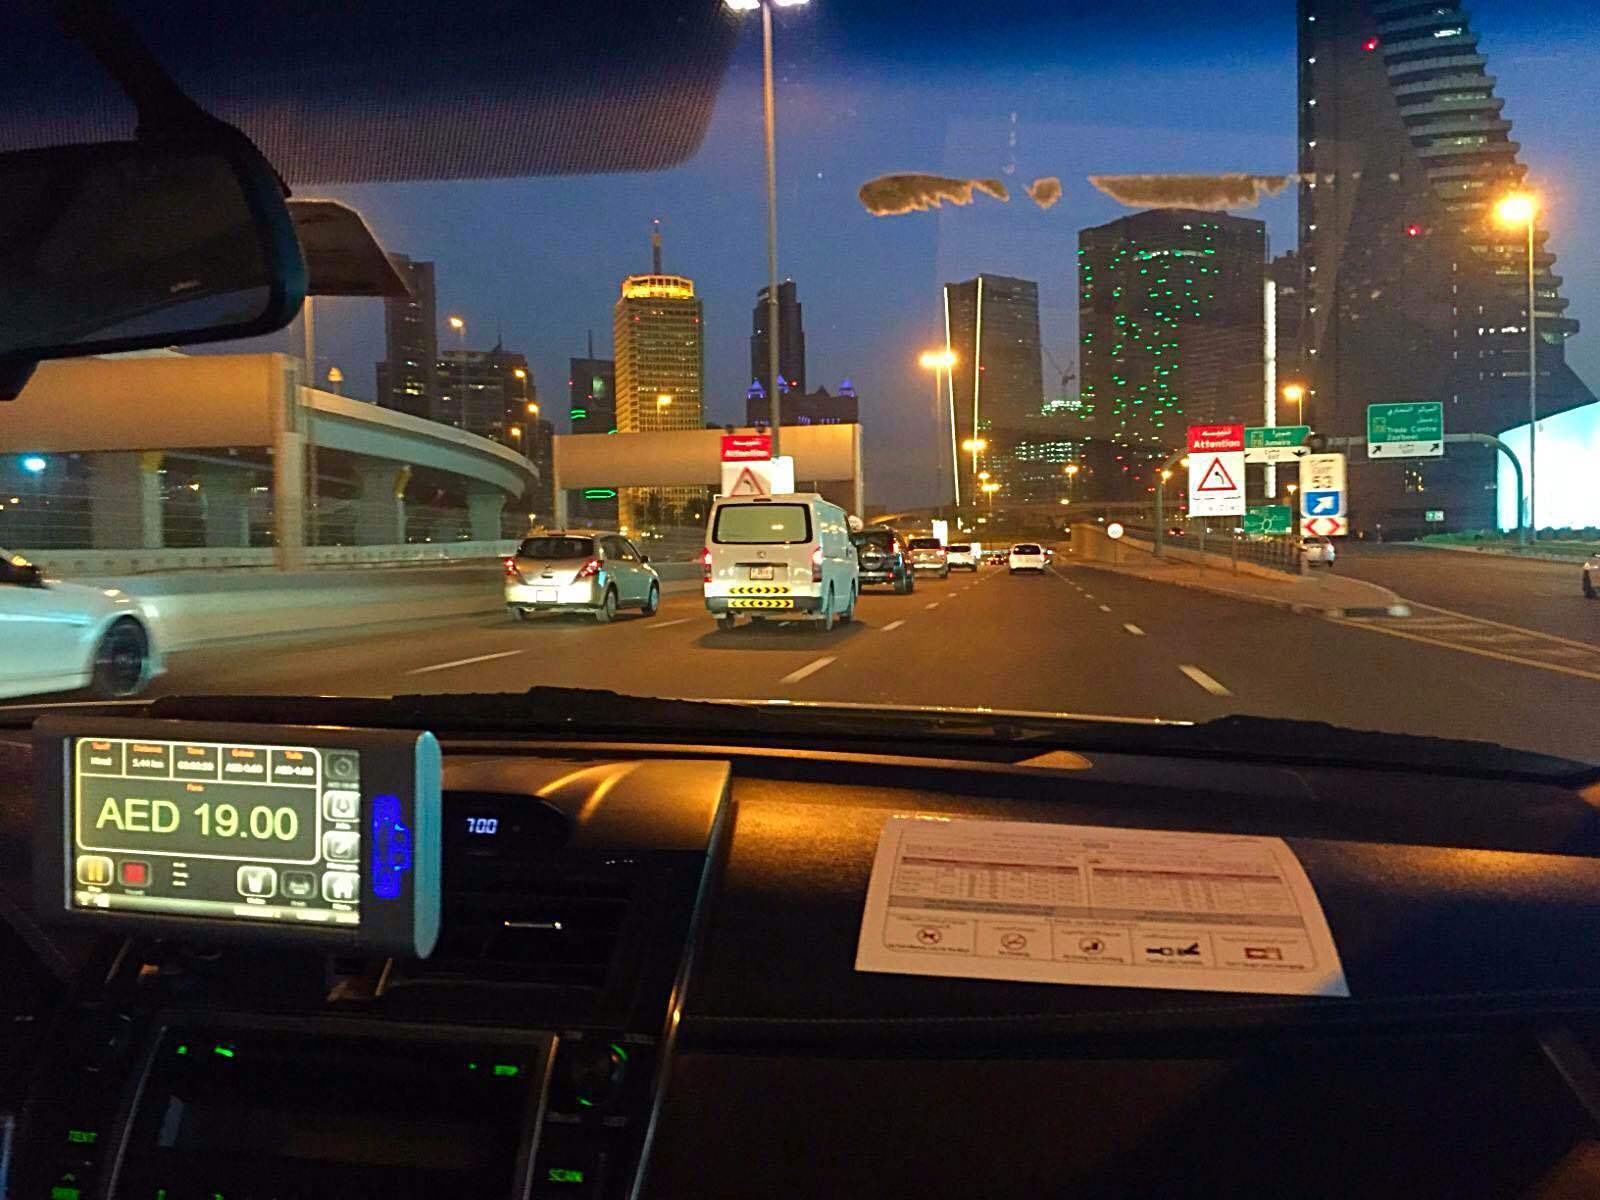 出租车外迪拜的夜景. 迪拜购物中心